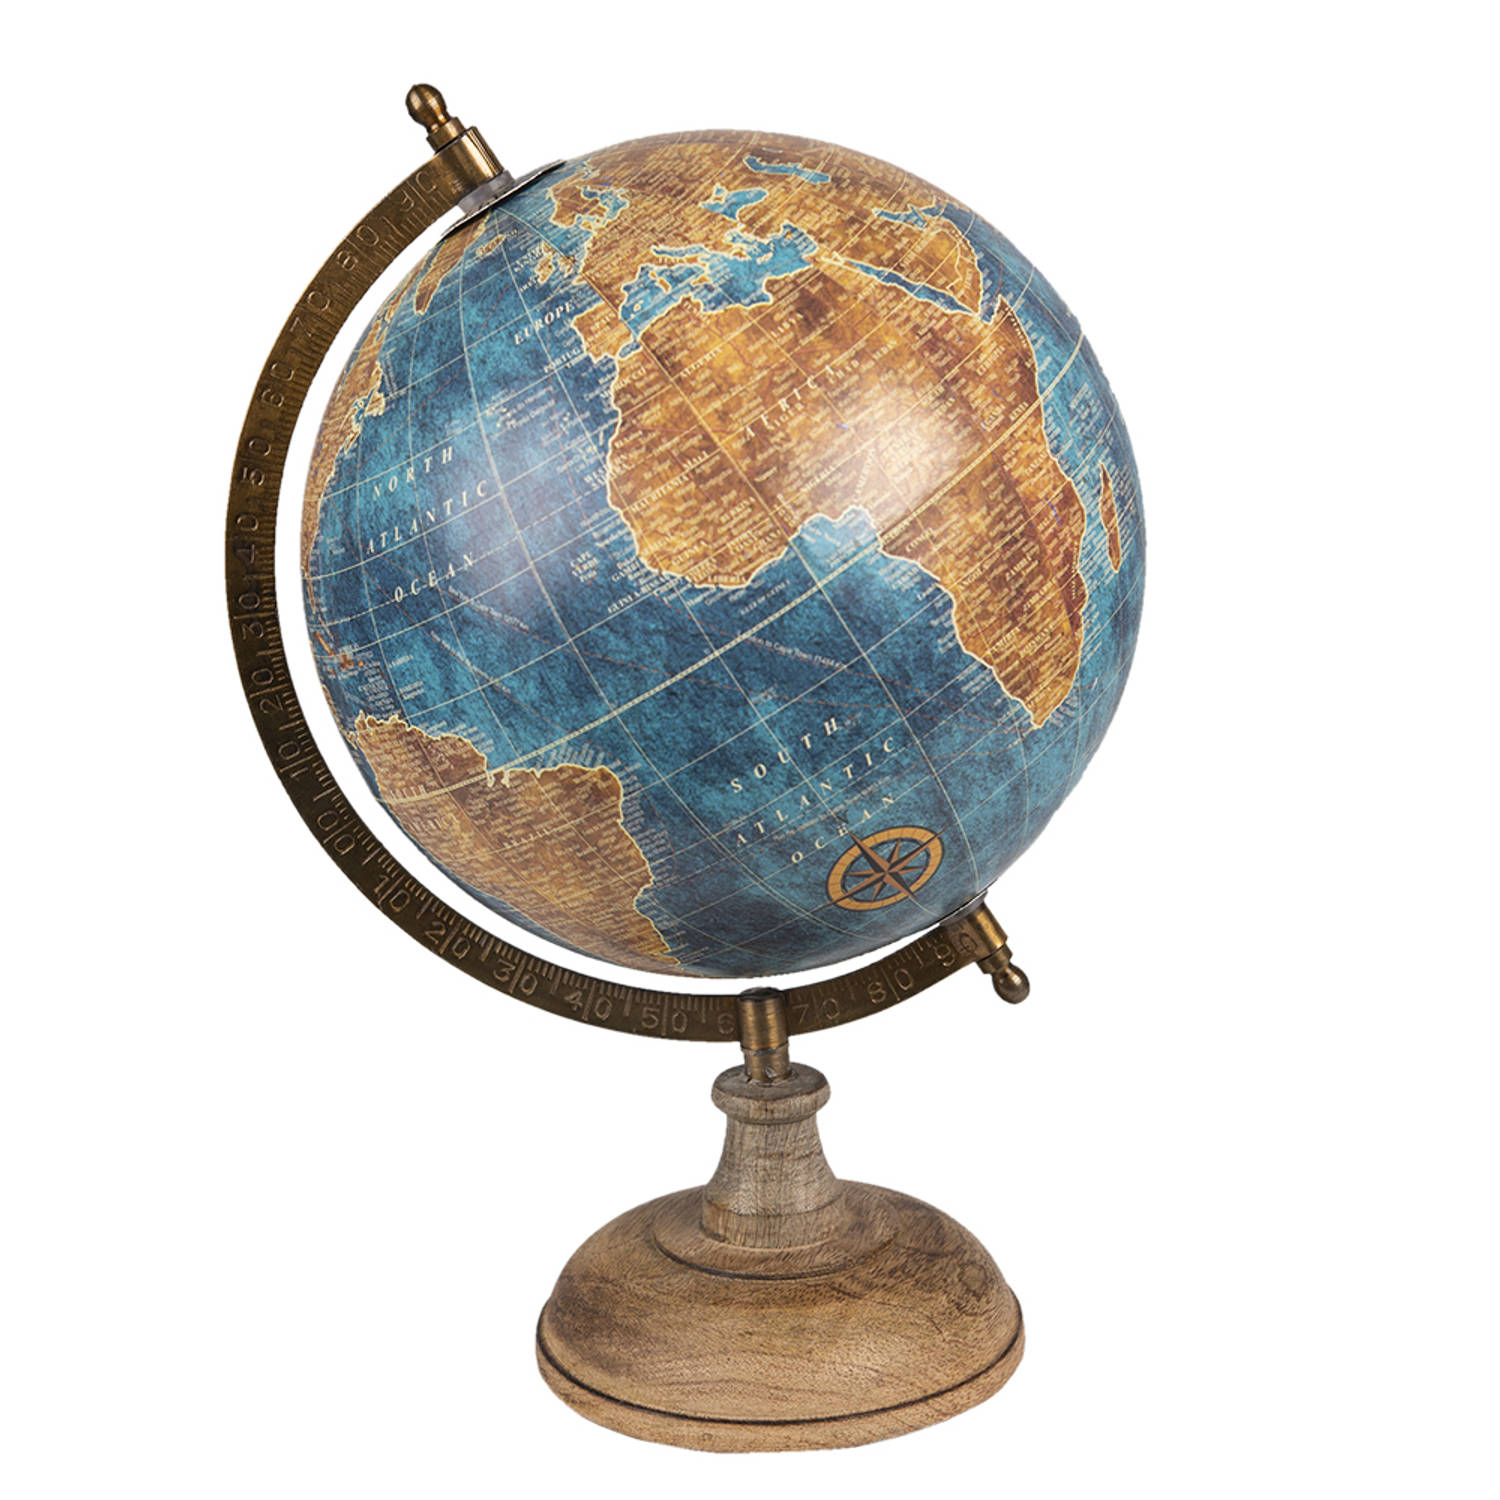 HAES DECO - Decoratieve Wereldbol met bruin houten voet - formaat 22x37cm - kleuren Blauw / Beige / Bruin - Vintage Wereldbol, Globe, Aarbol